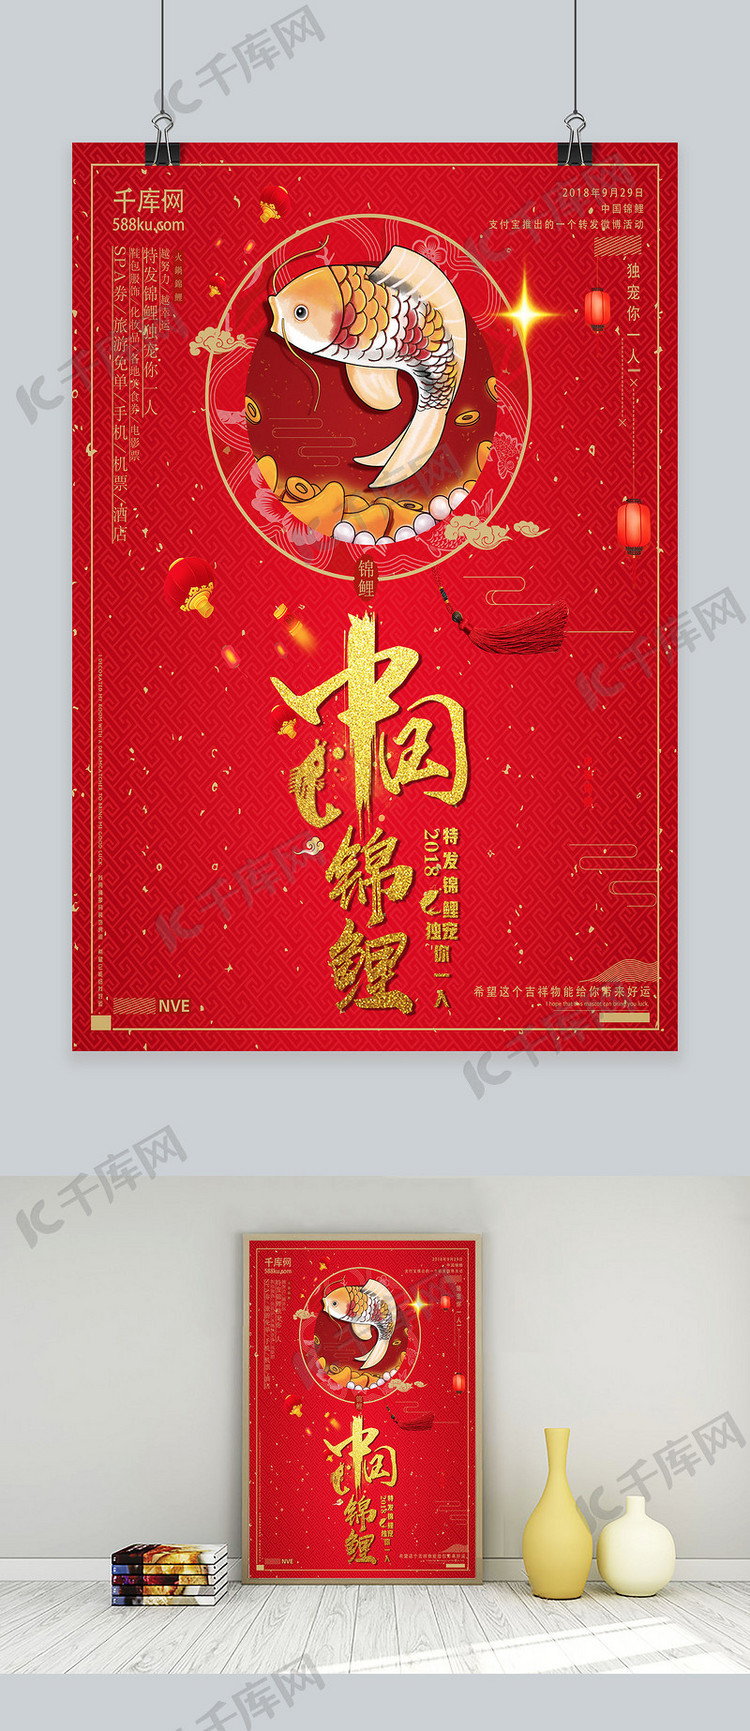 中国锦鲤独宠你一人商业海报设计